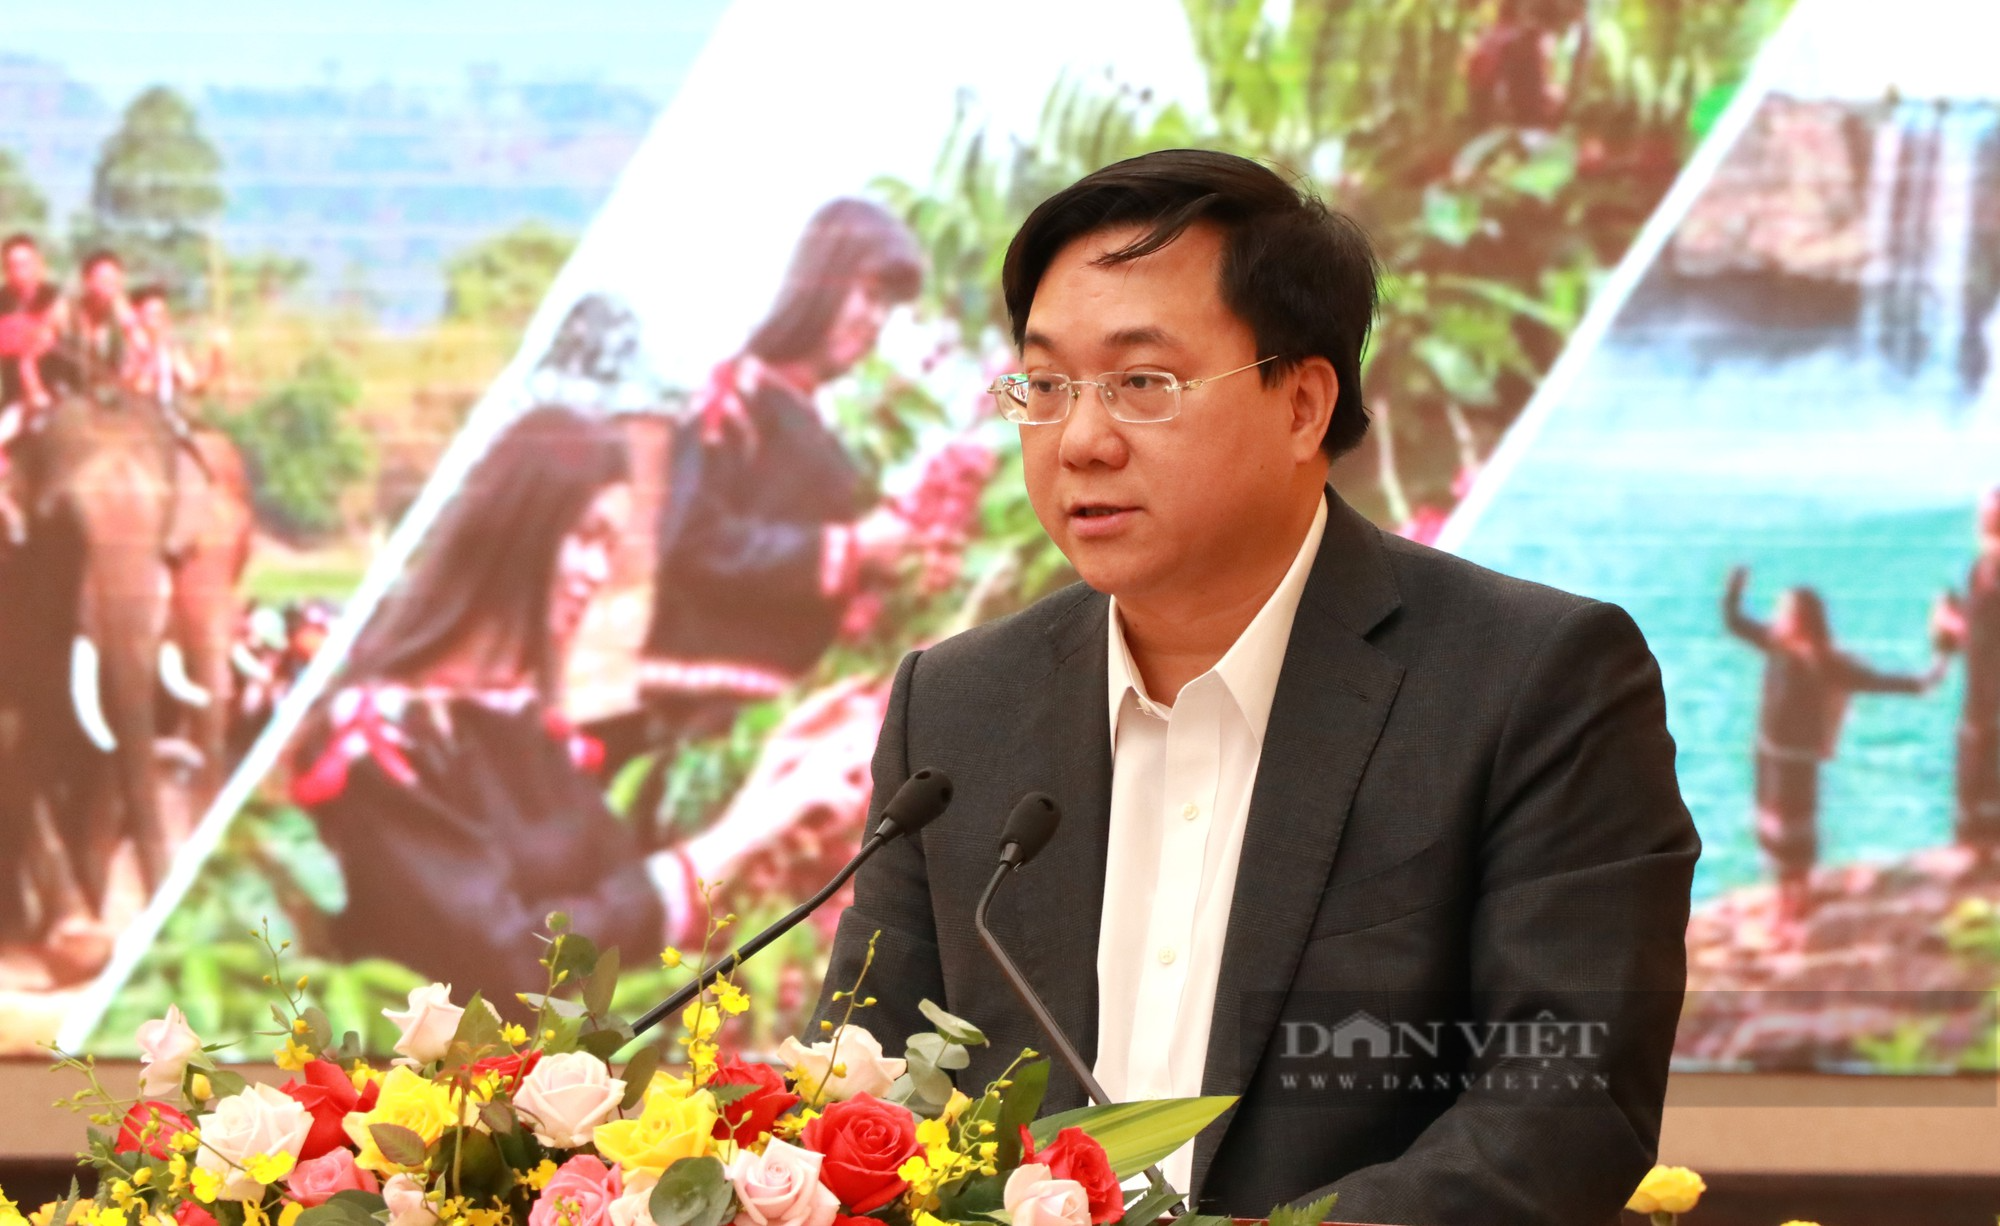 Phó Thủ tướng Trần Lưu Quang: Sản xuất nông nghiệp theo chuỗi ở Tây Nguyên phải vượt qua ranh giới của từng tỉnh - Ảnh 1.